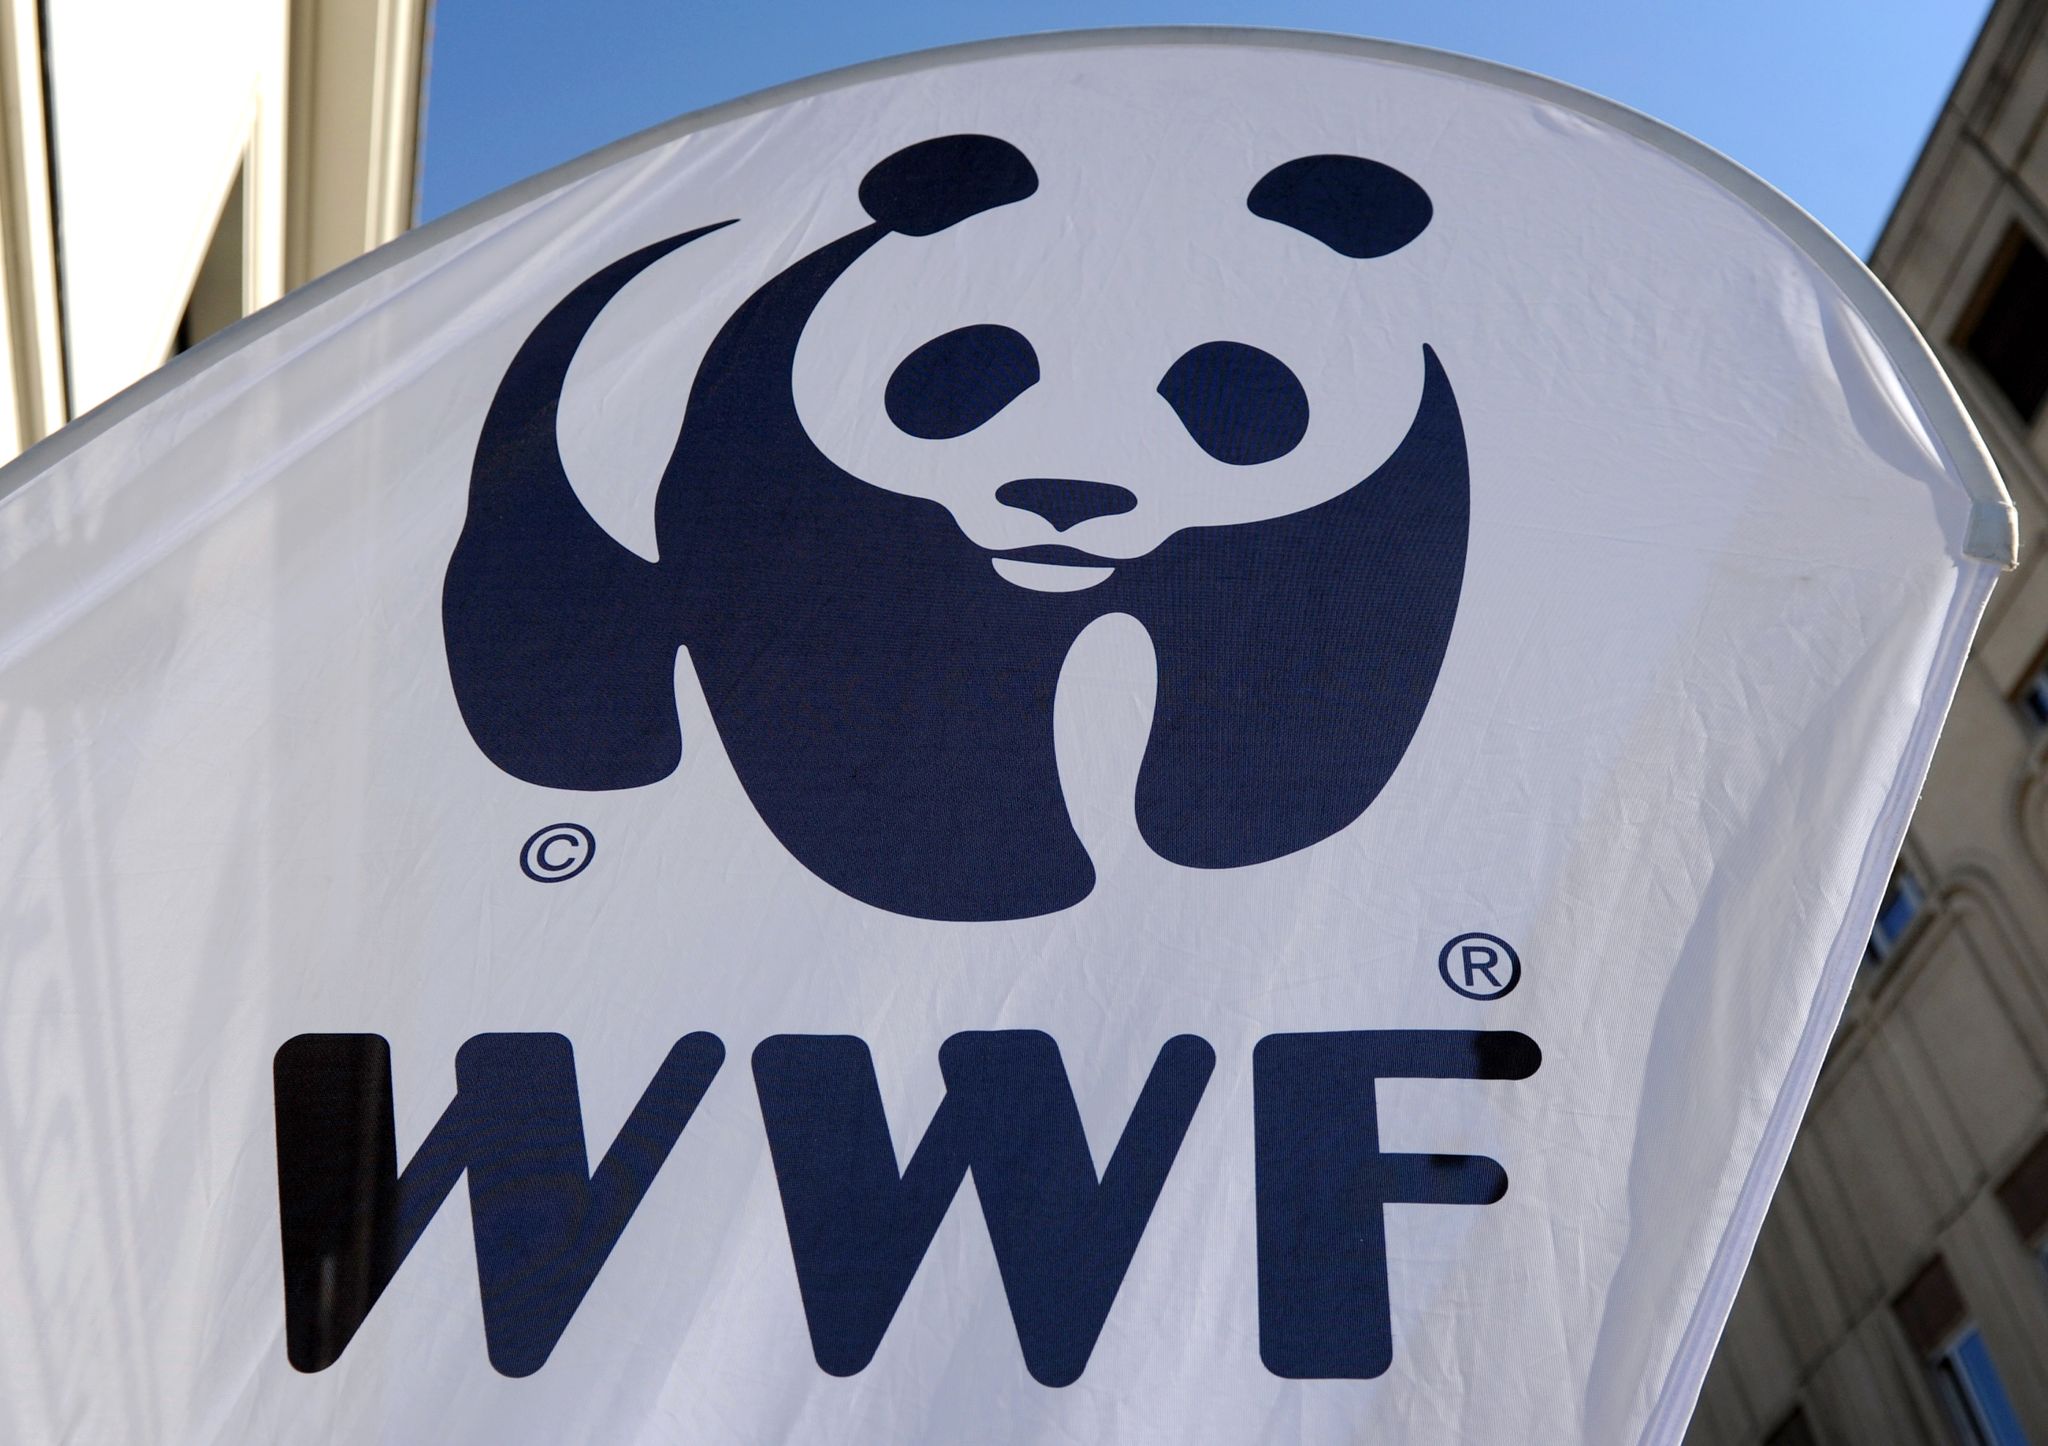 Das WWF-Logo ist auf einem Aufsteller zu sehen.